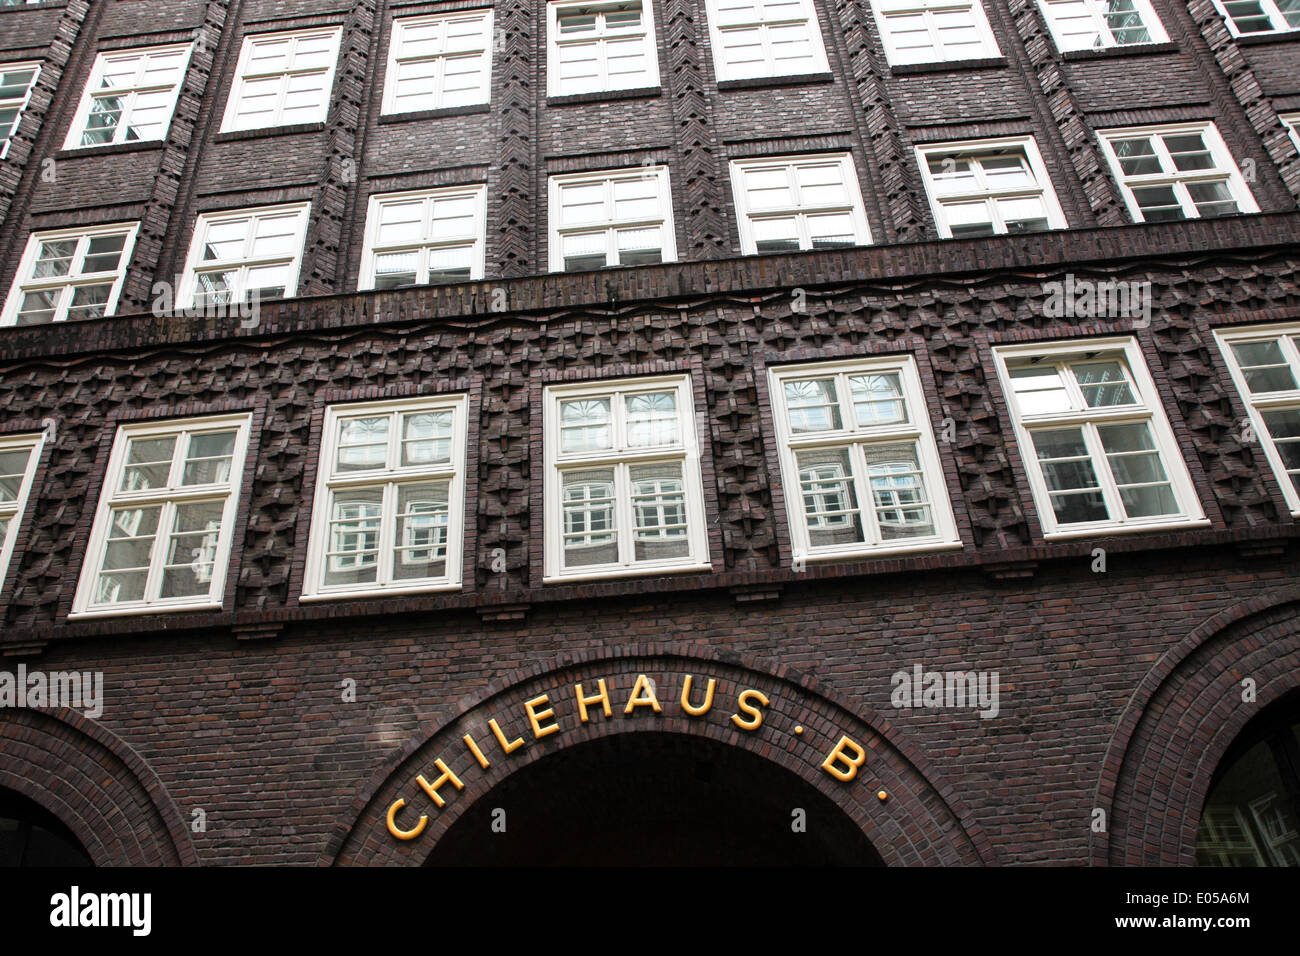 Anzeigen Architektur Chile Haus Deutschland Europa bauen Hamburg Haus Häuser Immobilien Immobilien Stadtzentrum Länder reisen t Stockfoto